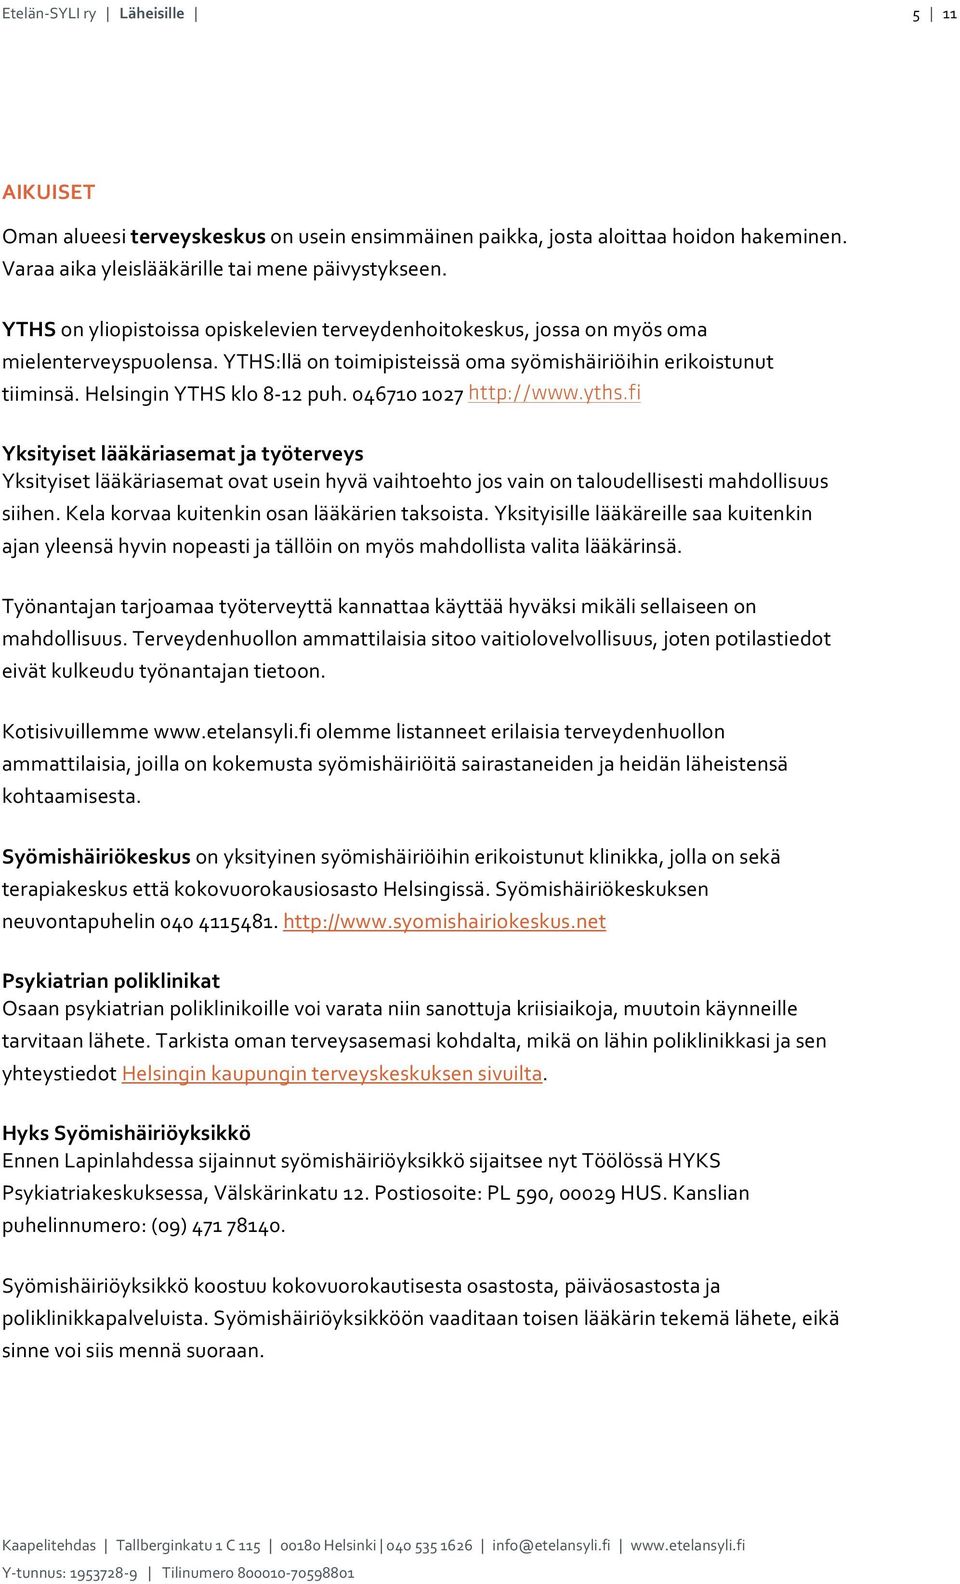 yths.fi Yksityisetlääkäriasematjatyöterveys Yksityisetlääkäriasematovatuseinhyvävaihtoehtojosvainontaloudellisestimahdollisuus siihen.kelakorvaakuitenkinosanlääkärientaksoista.